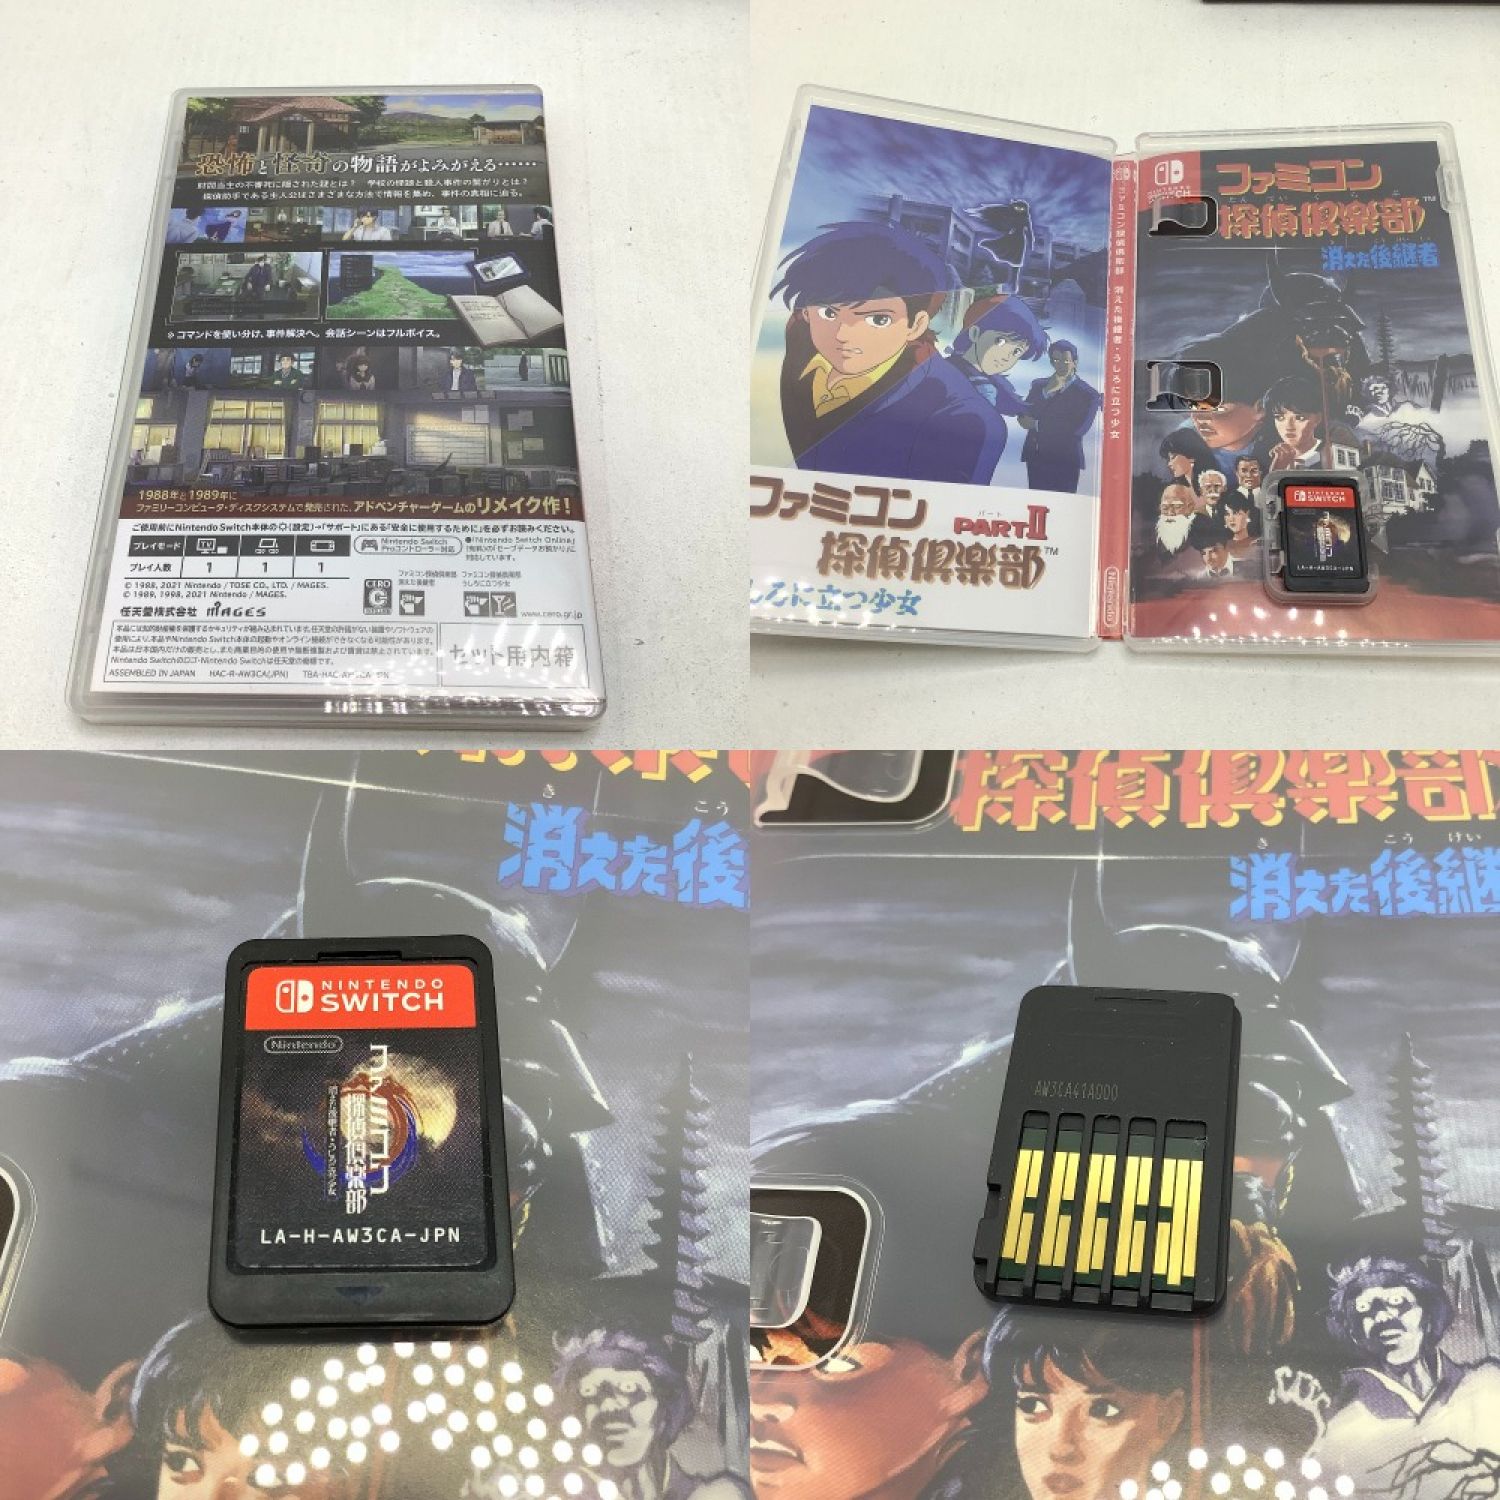 販売中です ファミコン探偵倶楽部 任天堂 スイッチソフト - テレビゲーム